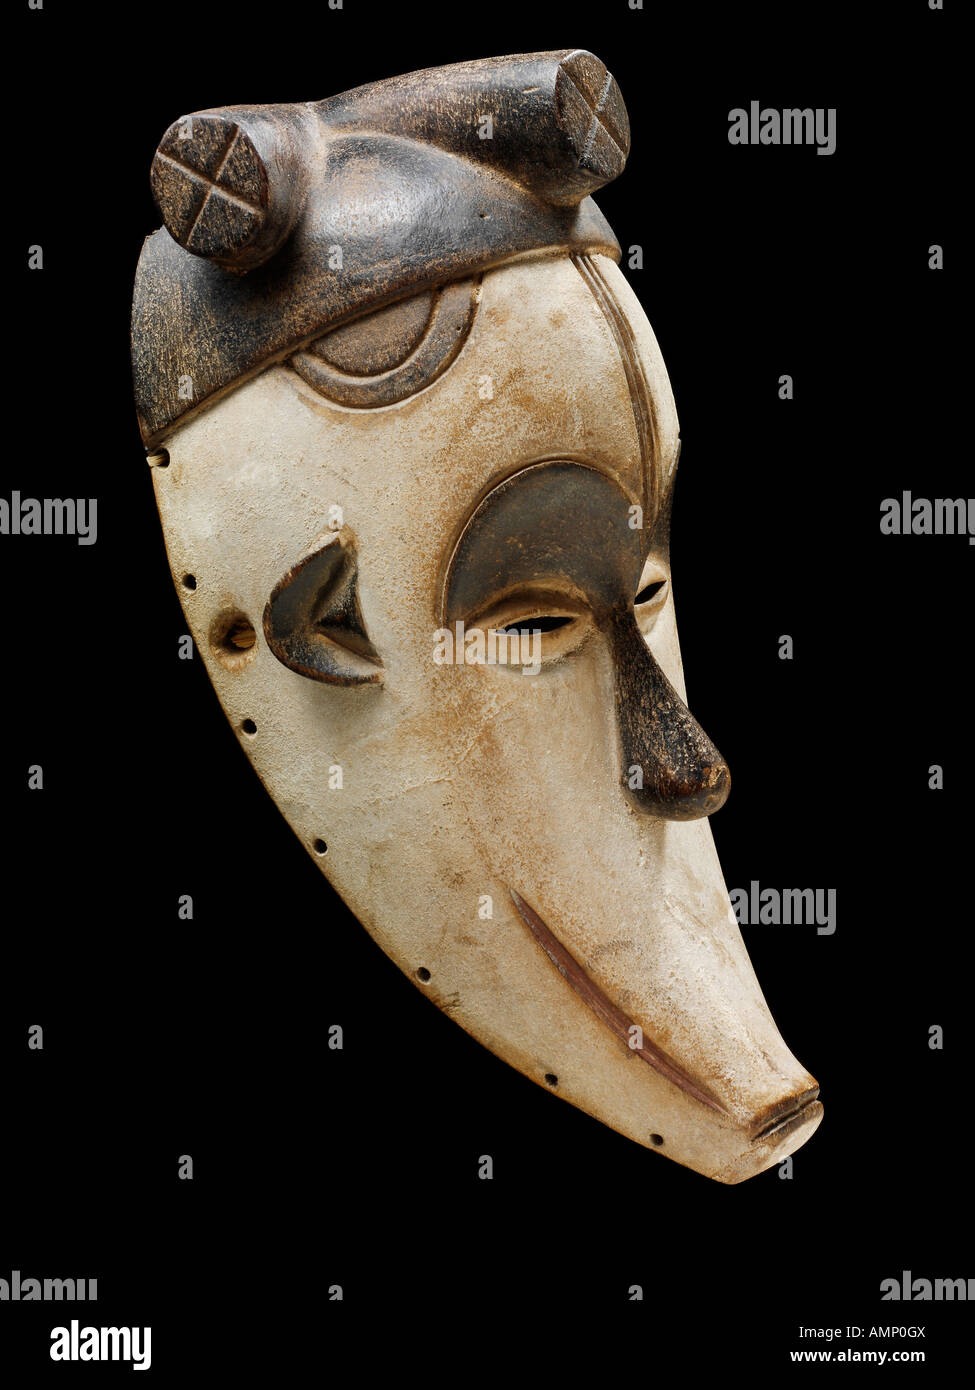 Ethnische traditionelle afrikanische Maske. Kunst und Handwerk. Stockfoto